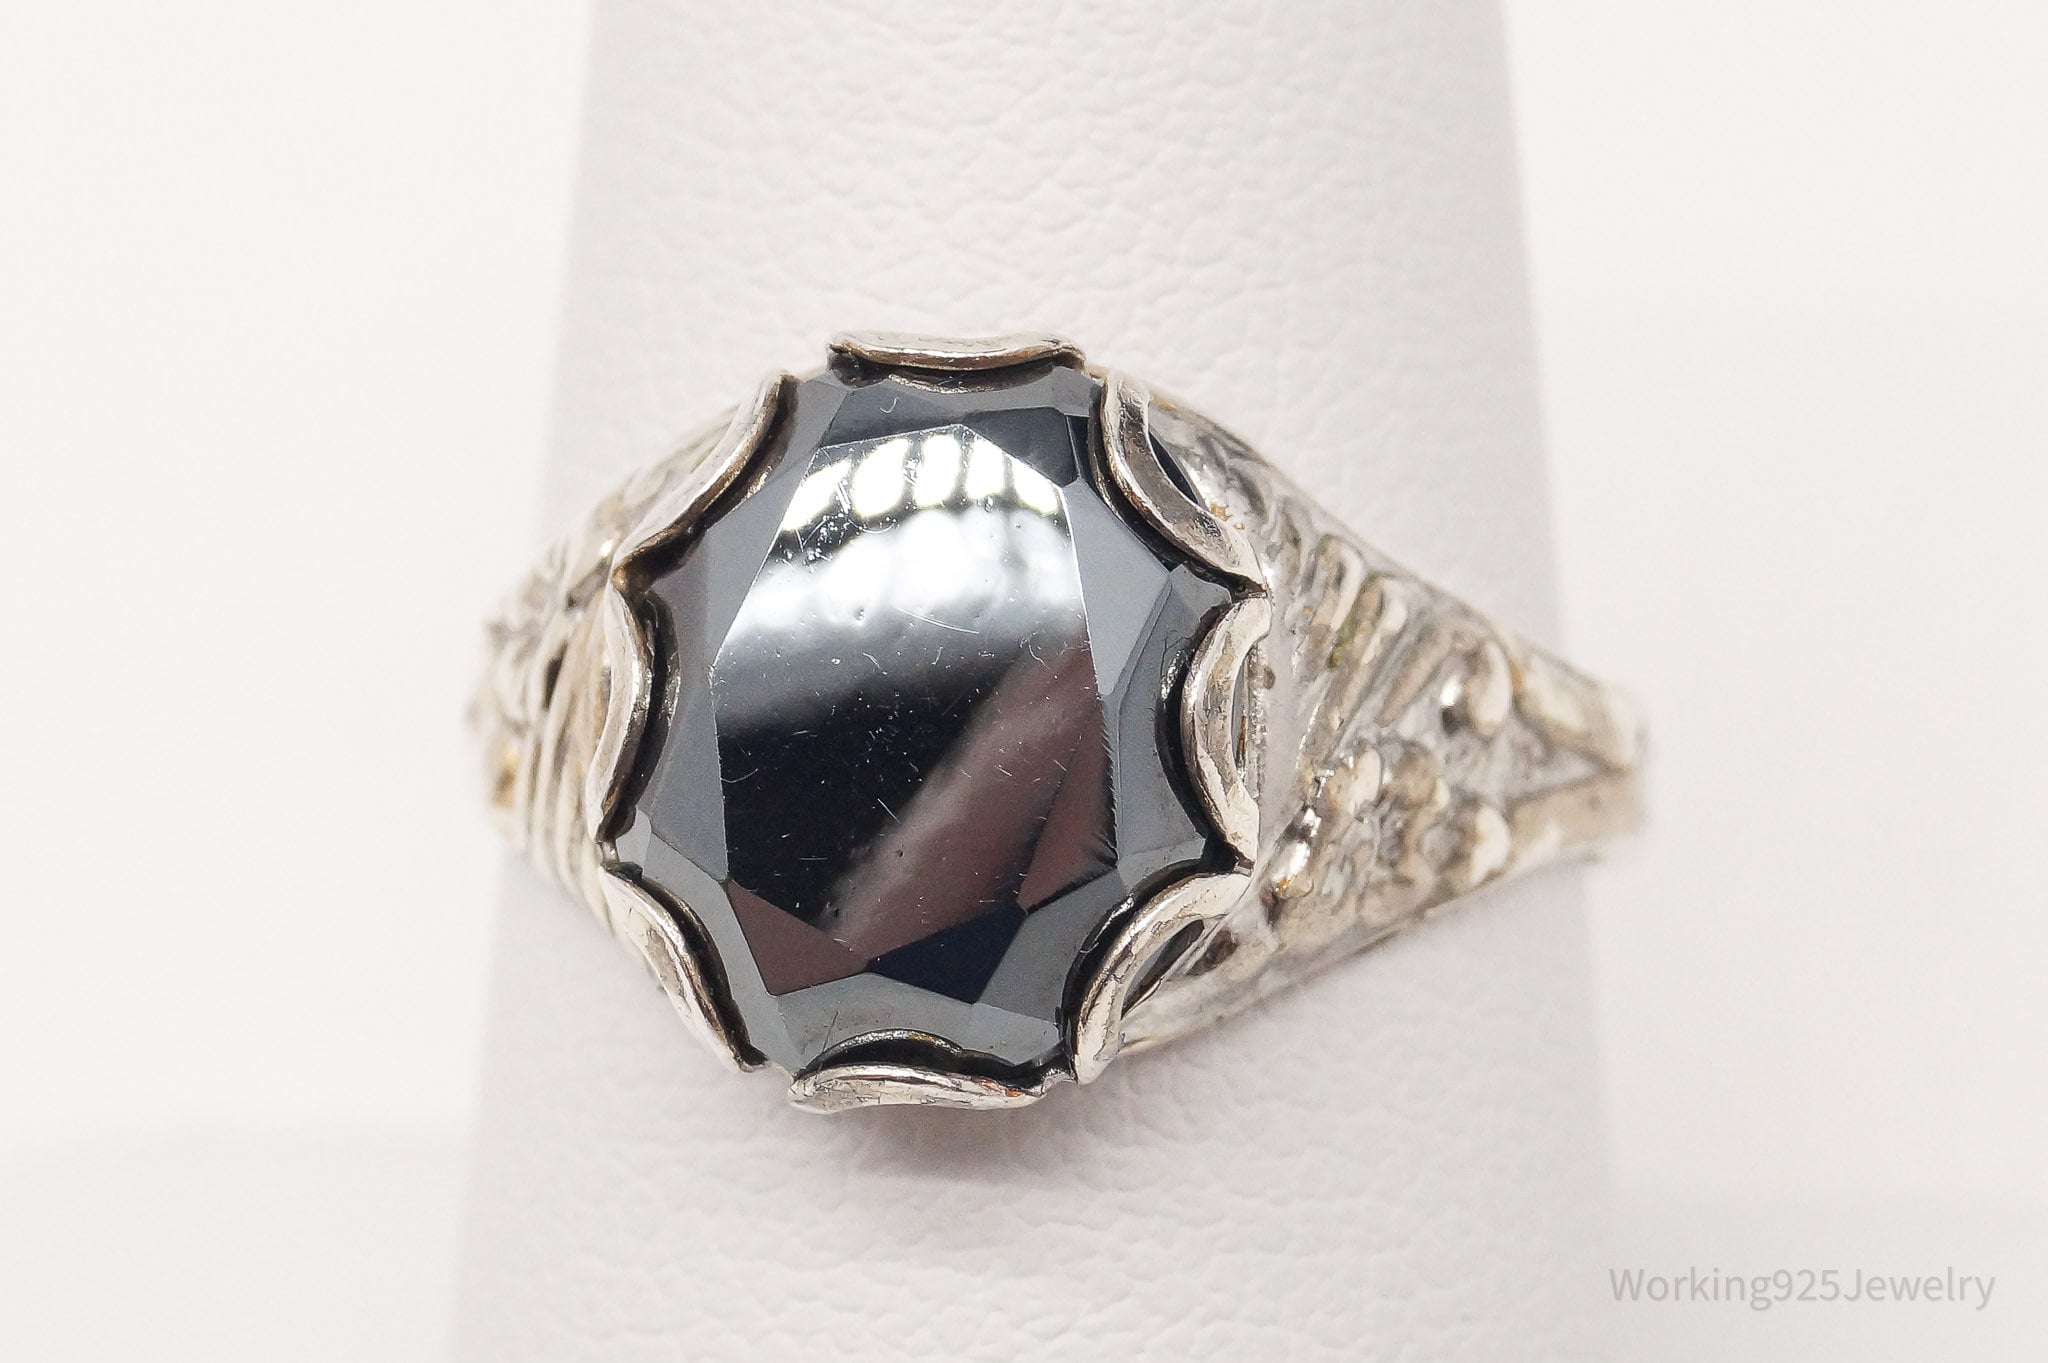 Antique Designer Hematite Sterling Silver Ring - Size 8 Adjustable